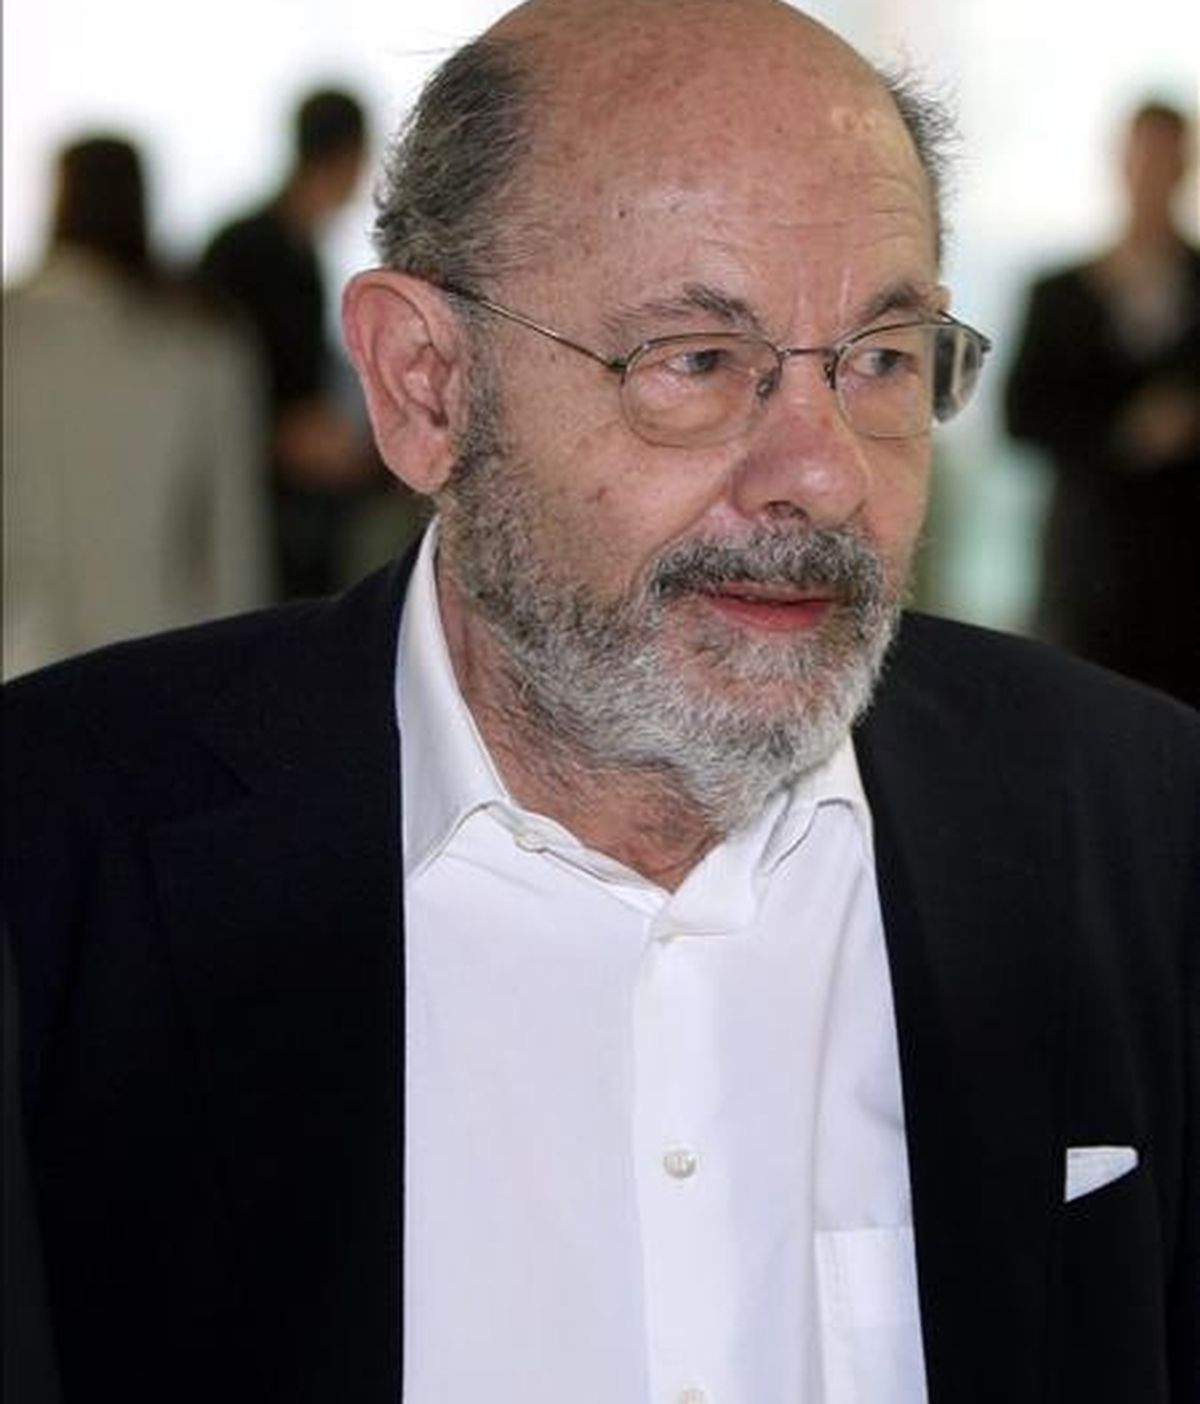 En la imagen, el ex presidente de la Fundación Orfeo Catalá- Palau de la Música, Fèlix Millet, momentos antes de su comparecencía ante el juez. EFE/Archivo